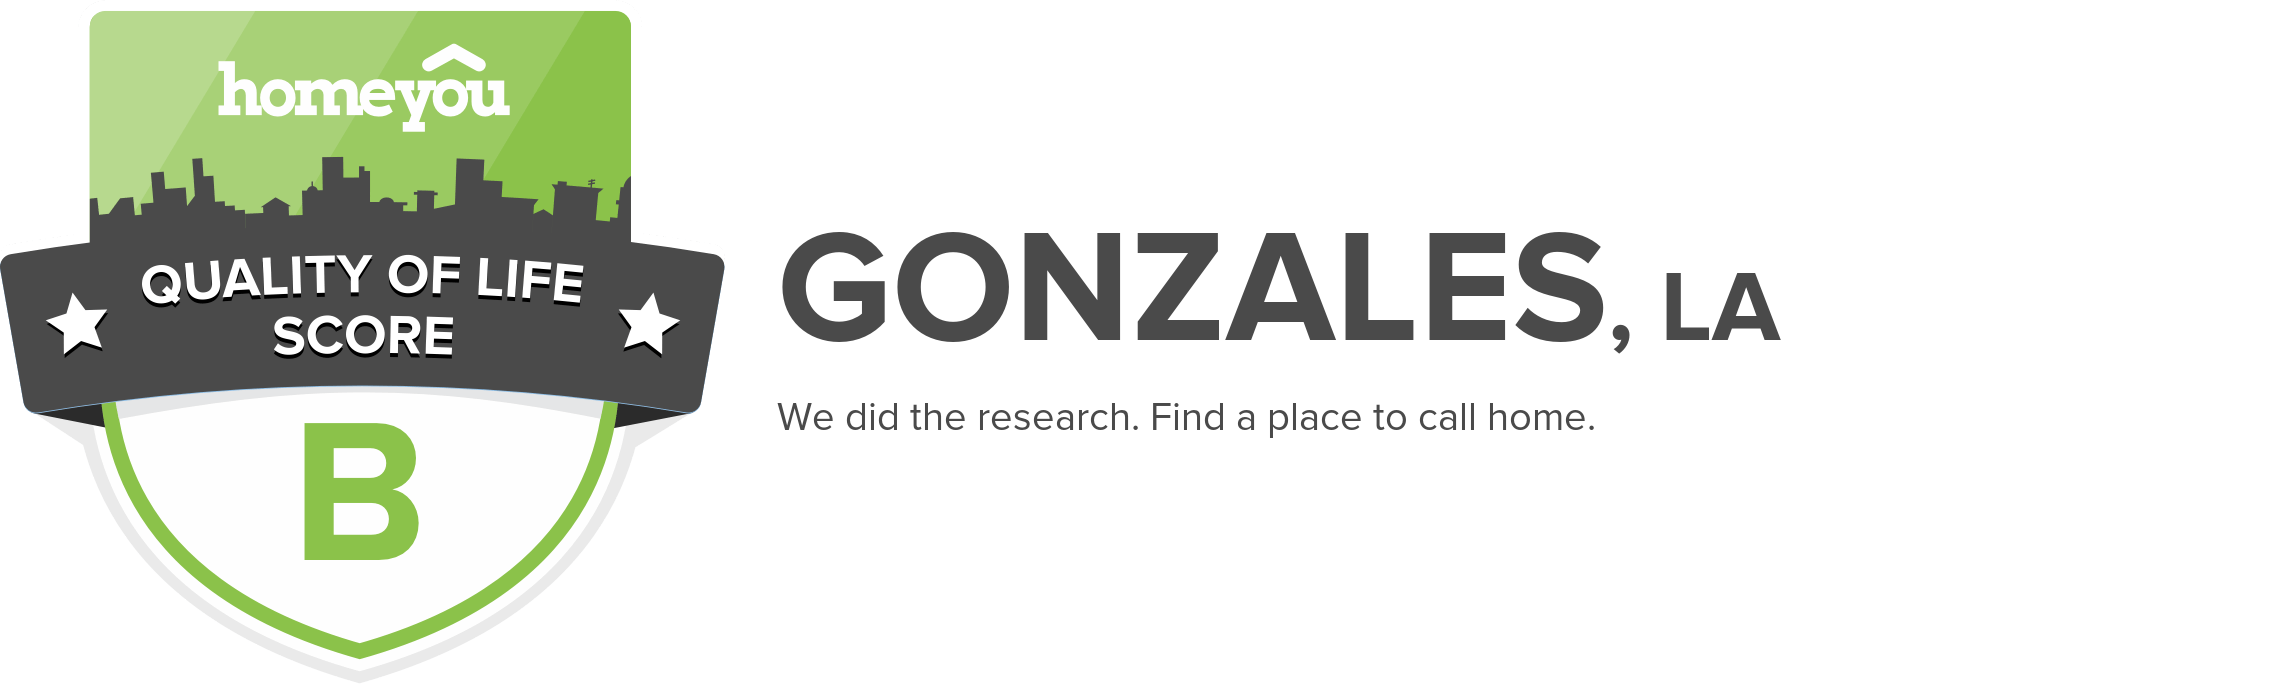 Gonzales, LA